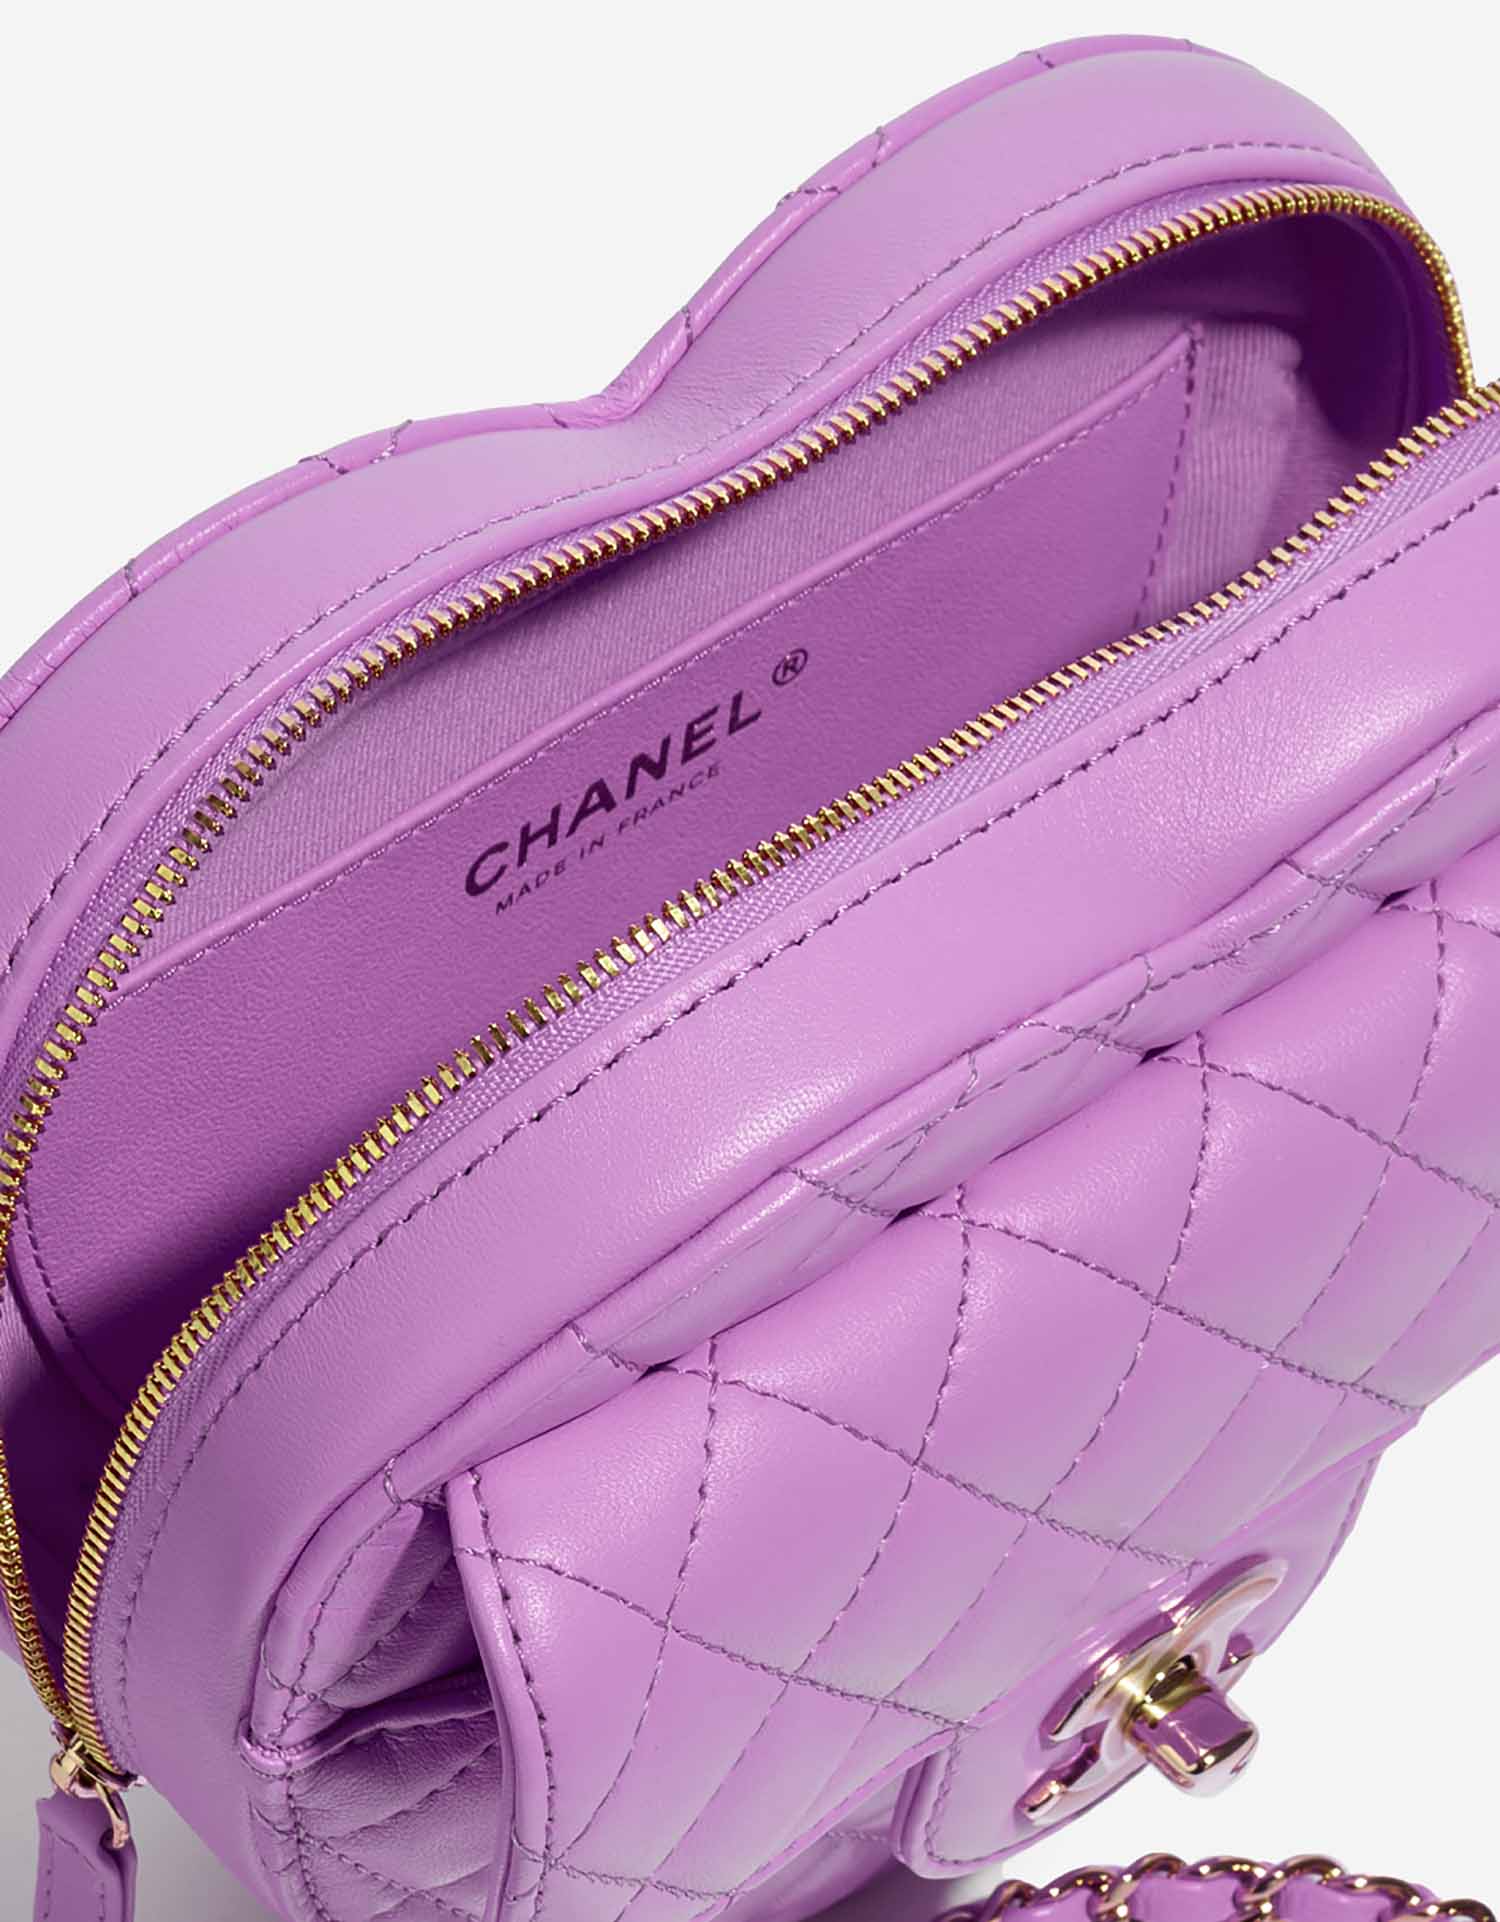 Chanel TimelessHeart Medium Violet Inside | Verkaufen Sie Ihre Designer-Tasche auf Saclab.com